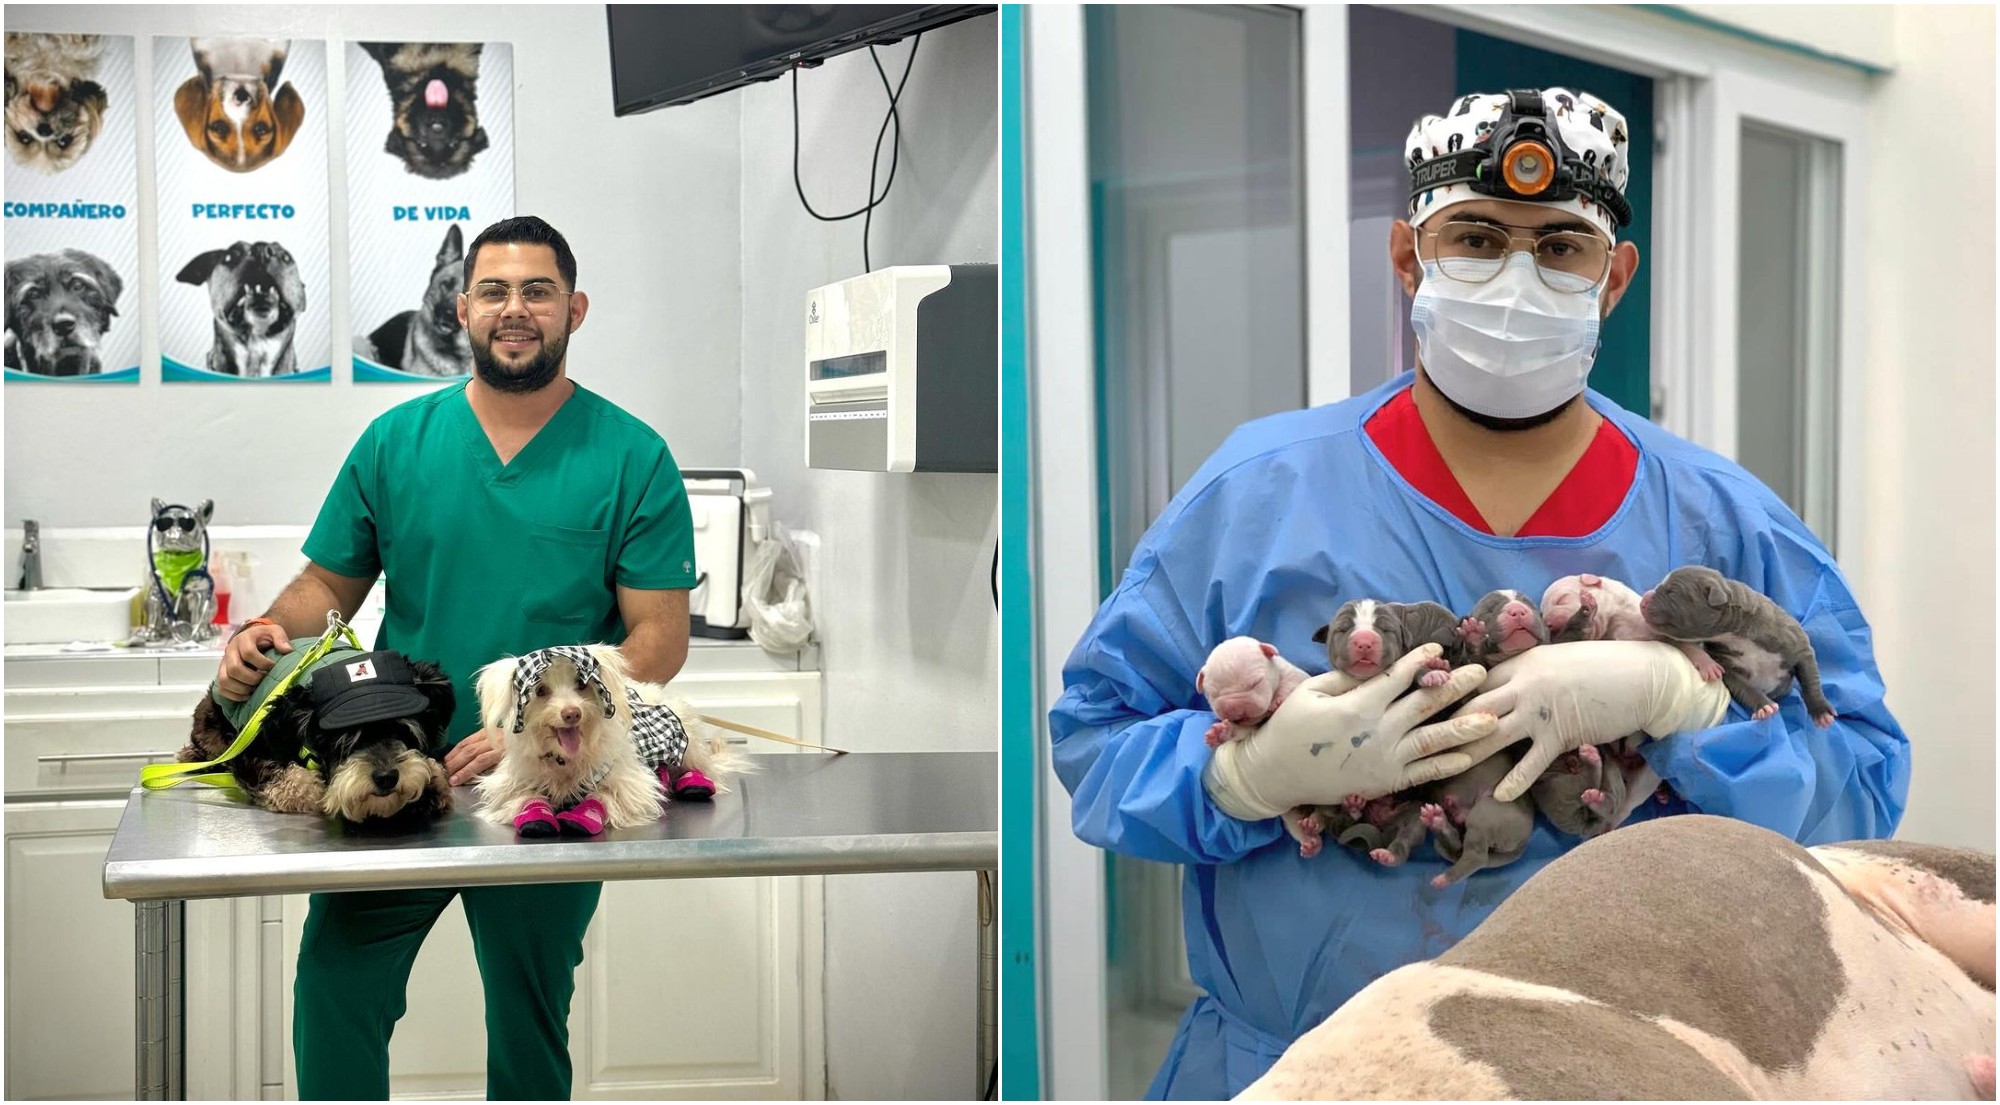 Colombiano abre veterinaria con servicios a bajo costo en Trujillo